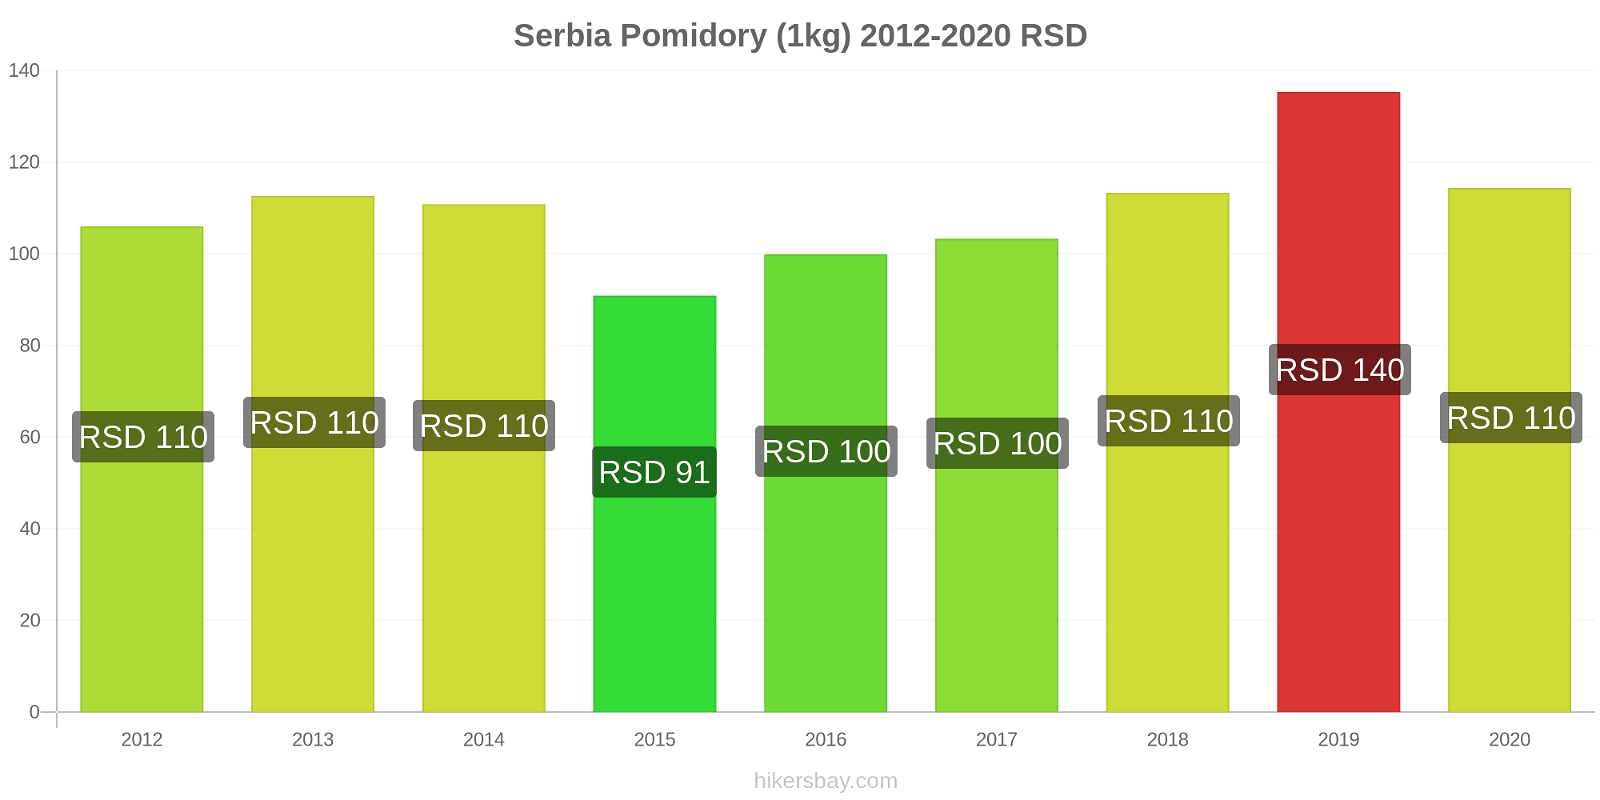 Serbia zmiany cen Pomidory (1kg) hikersbay.com